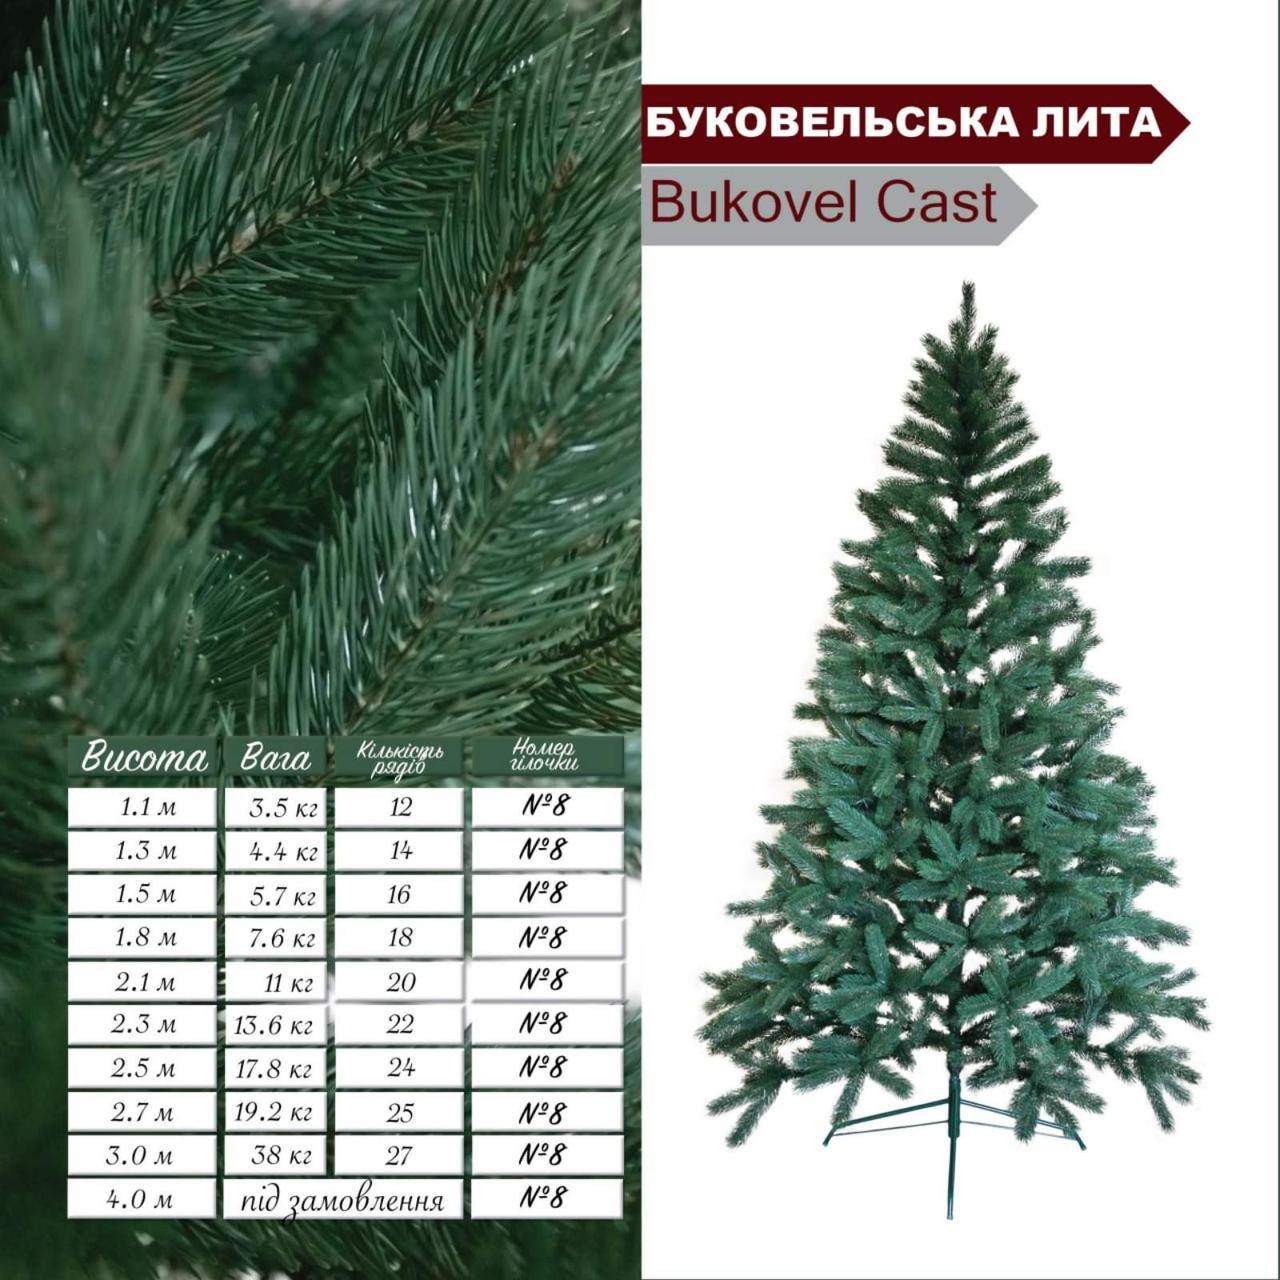 Ель буковельская литая зеленая Bukovel Cast № 8 высота 4